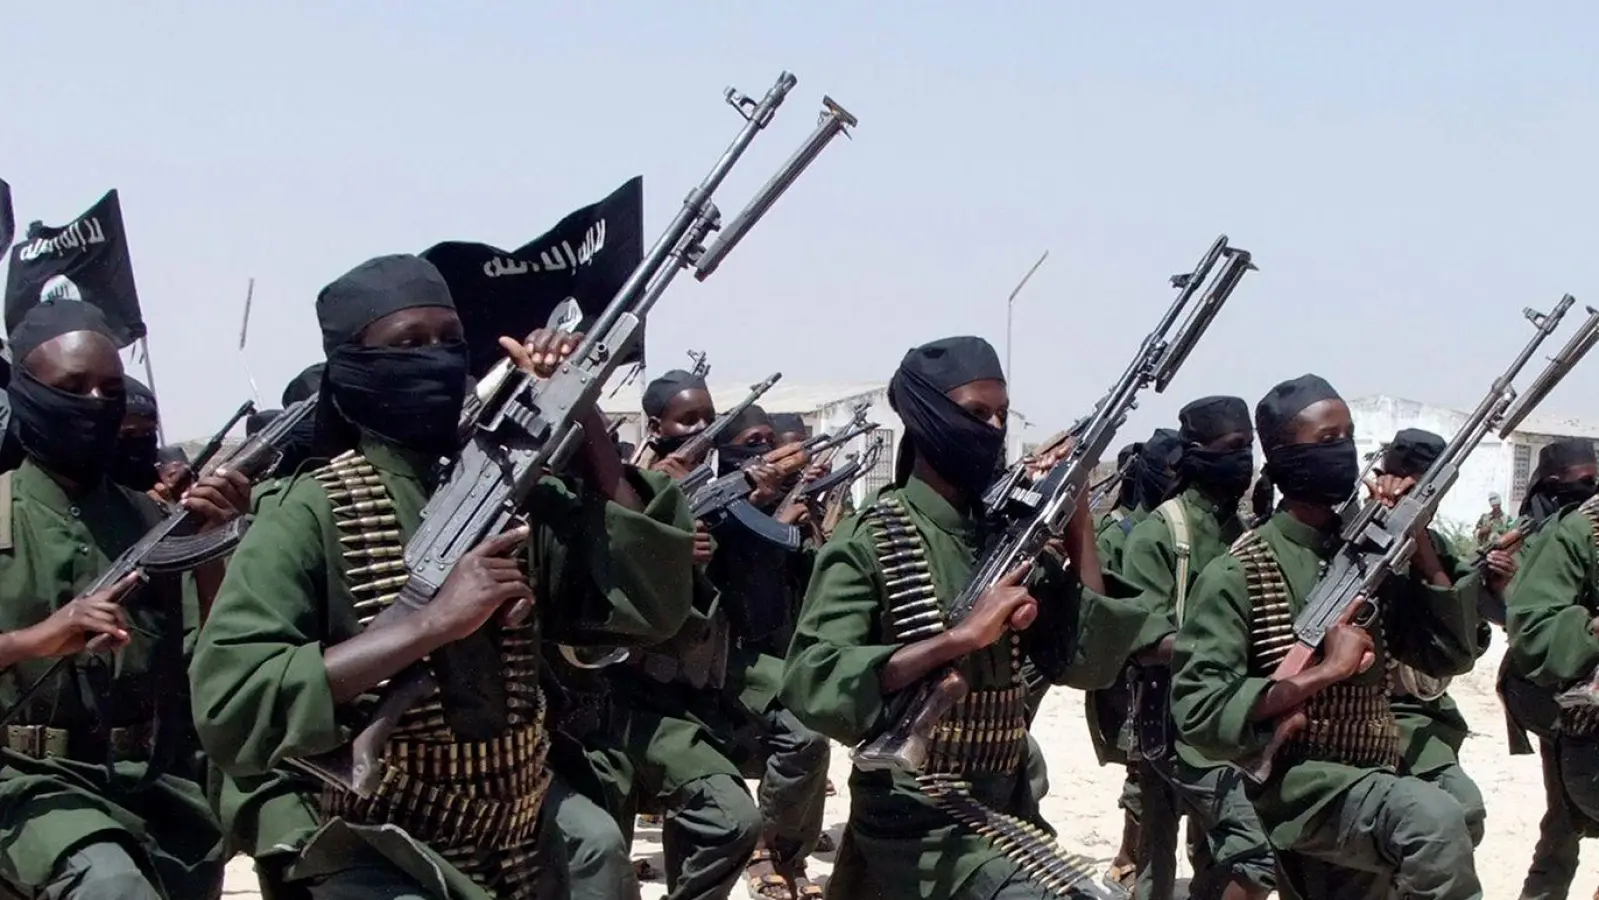 Die islamistische Terrorgruppe Al-Shabaab verübt seit Jahren immer wieder Anschläge in Somalia. (Foto: Farah Abdi Warsameh/AP/dpa)